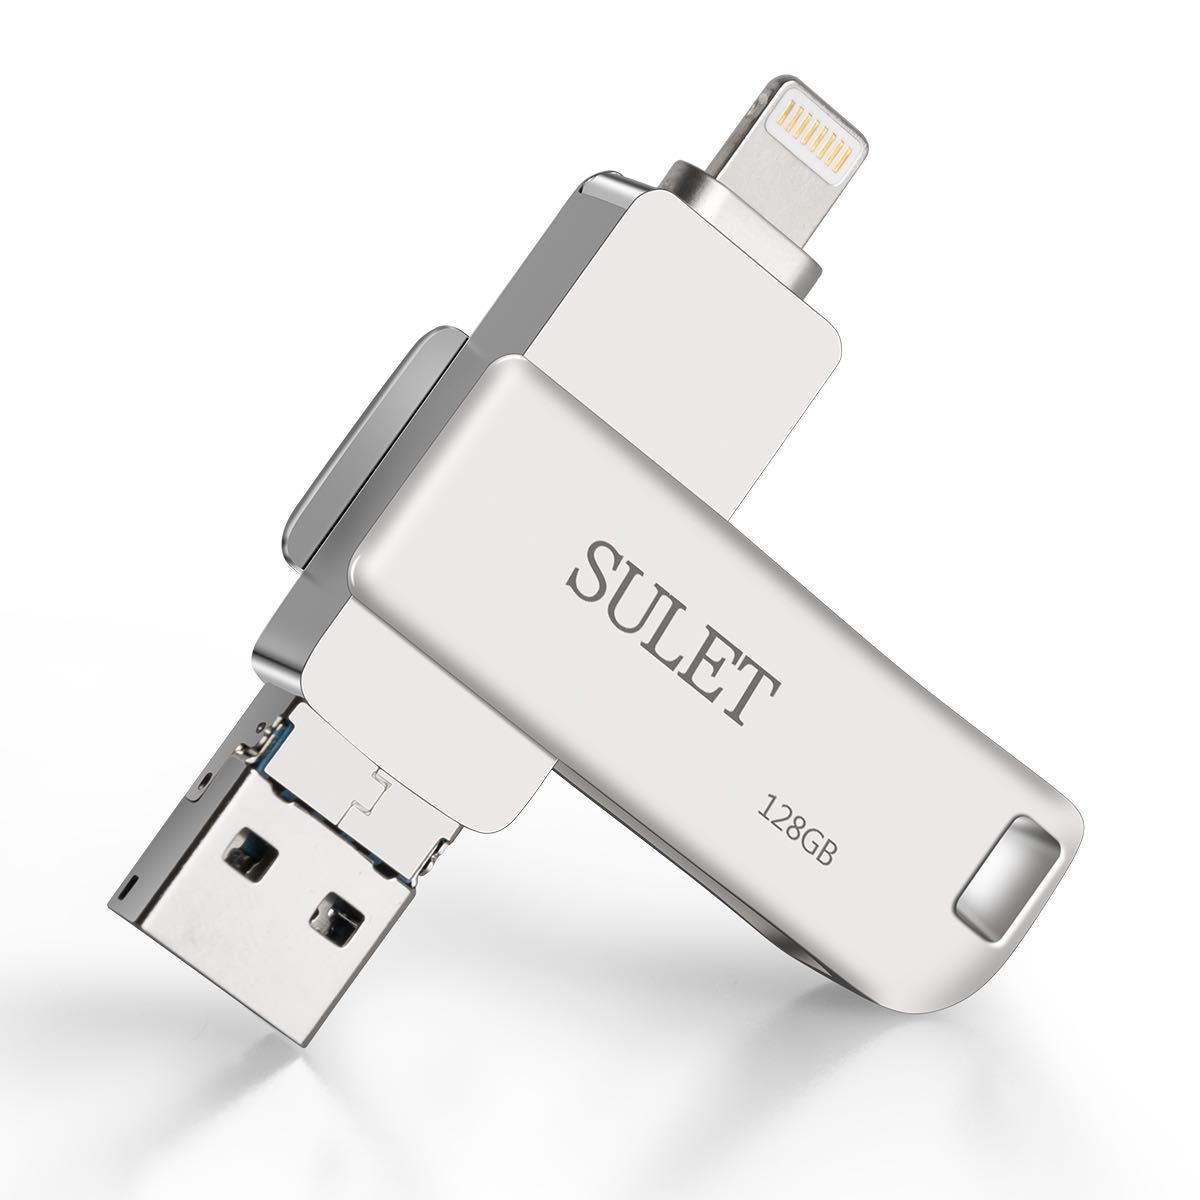 USBメモリ 128GB iPhone フラッシュドライブ 回転式 3in1